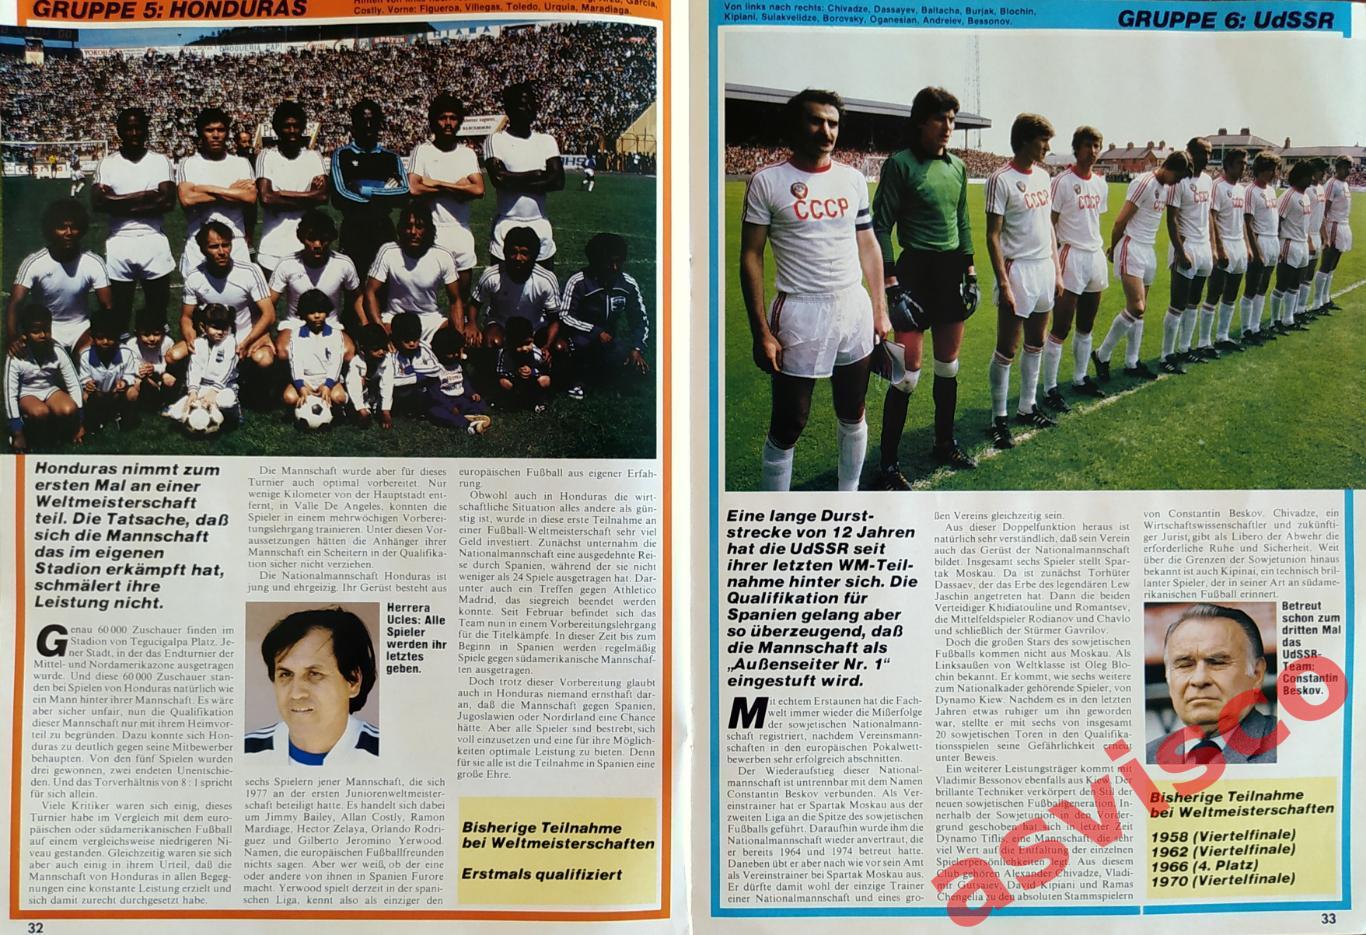 Чемпионат Мира по футболу в Испании 1982 года. Представление команд. Автографы. 4